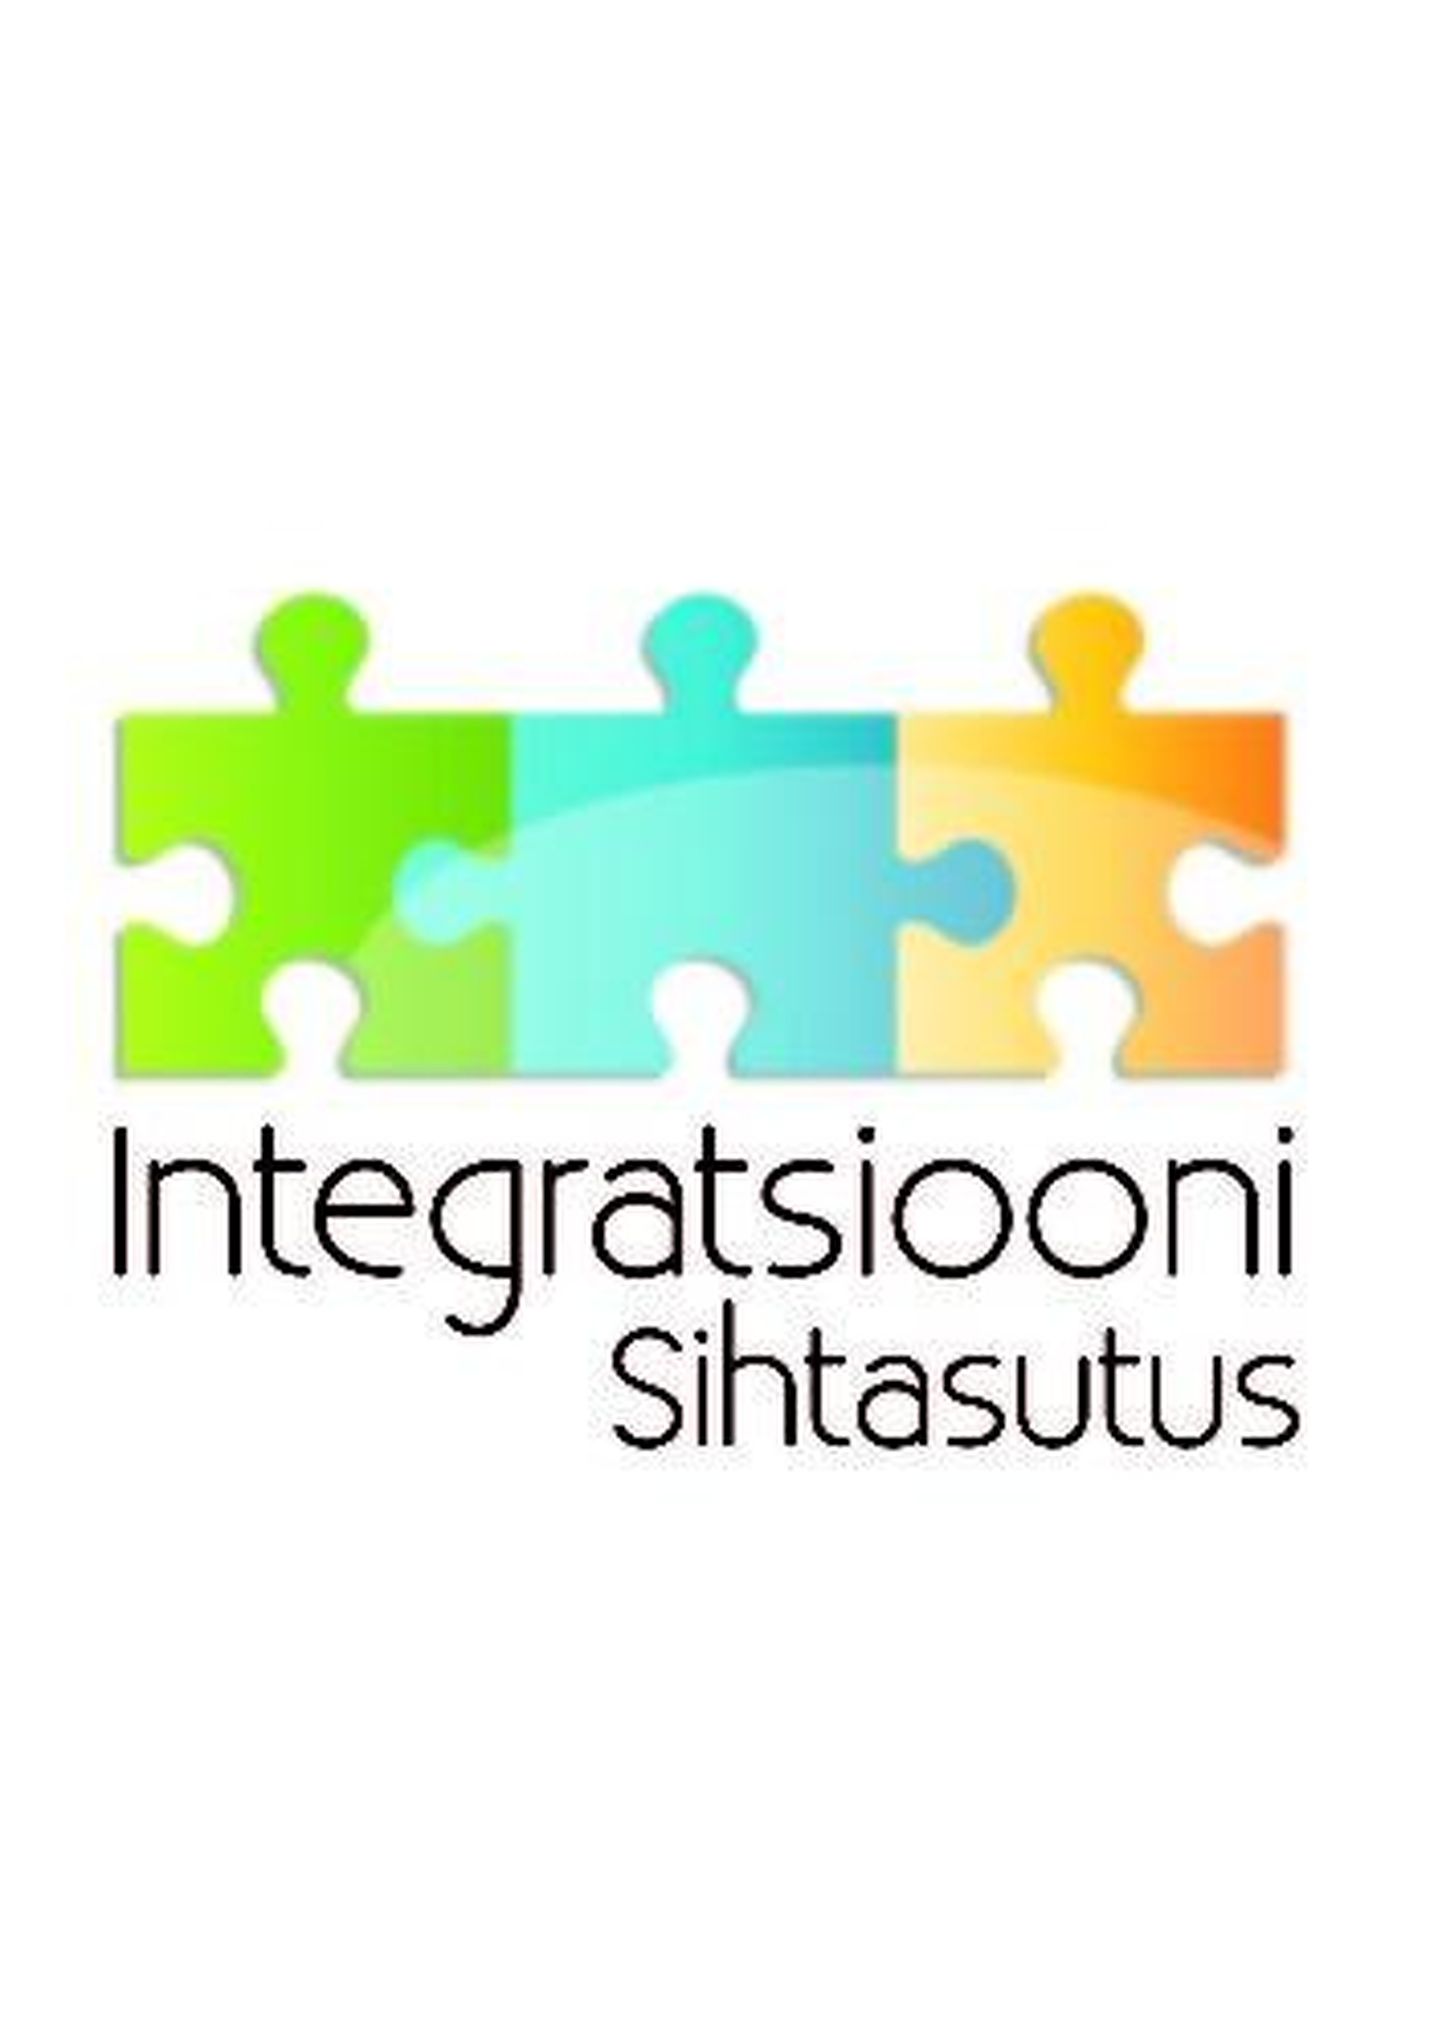 Логотип Фонда интеграции.